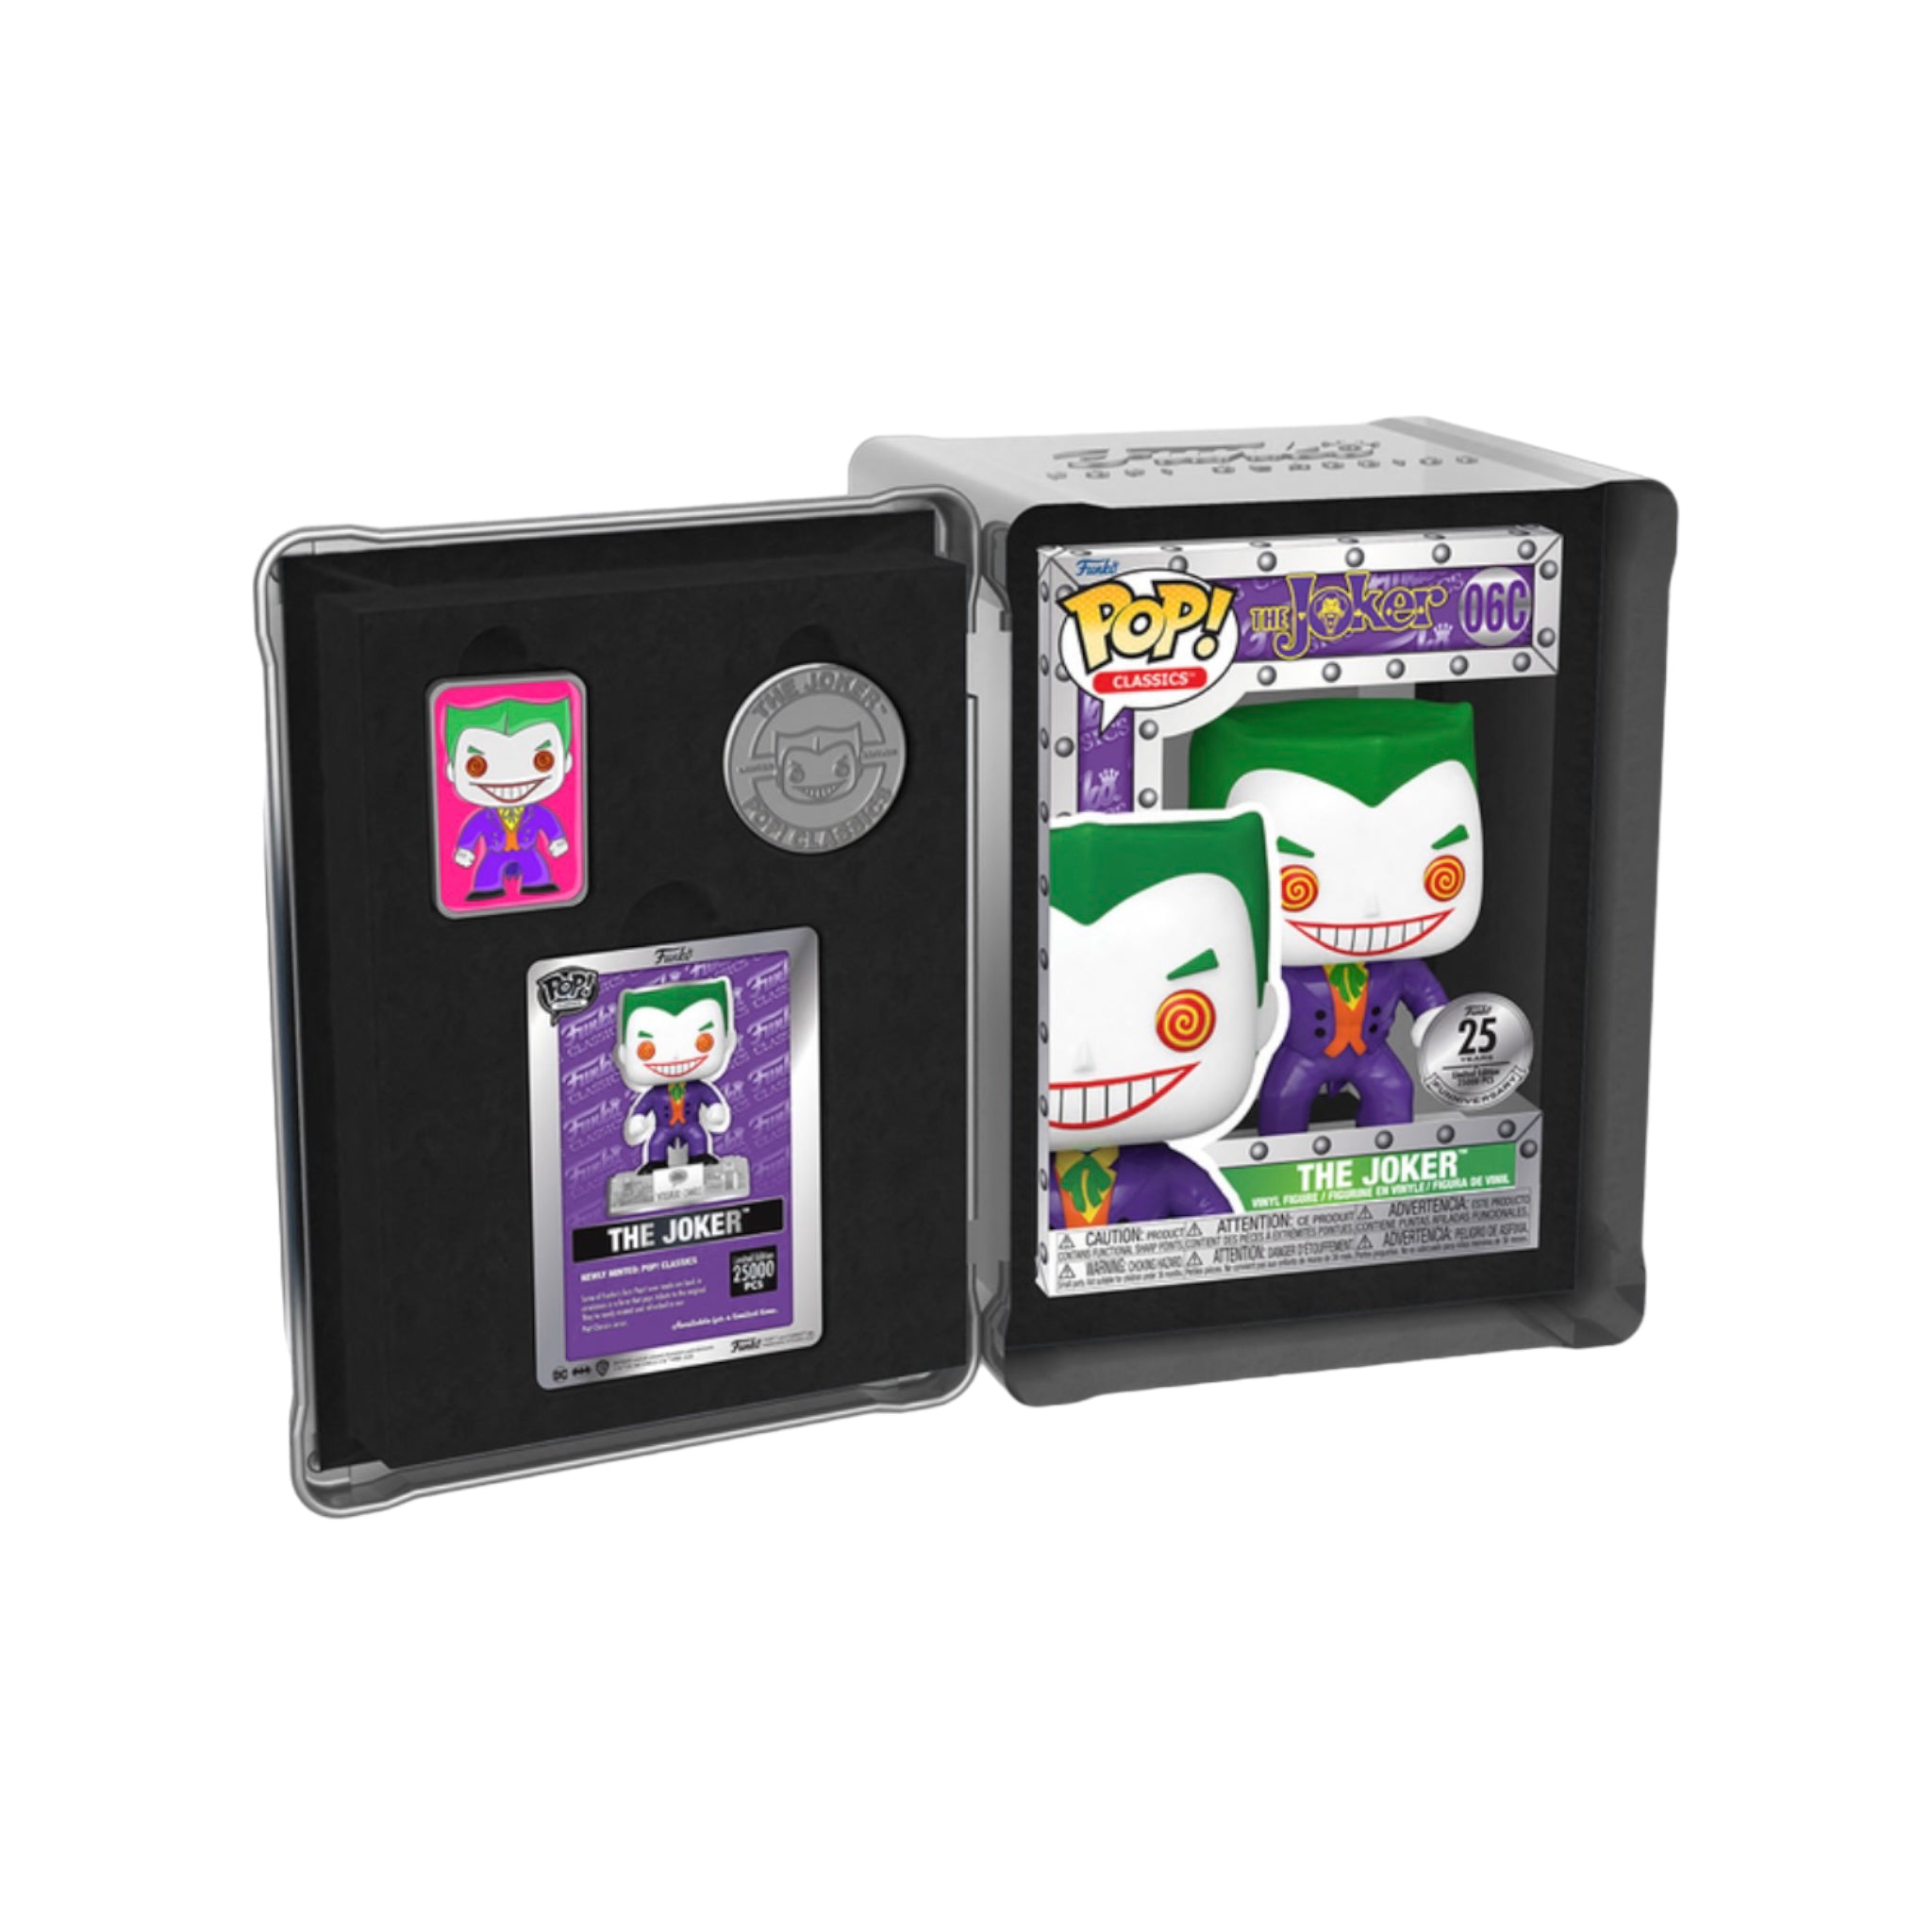 The Joker 25th Anniversary Funko Pop Classics! - Funko Shop Exclusive LE25000 Pcs - Sealed